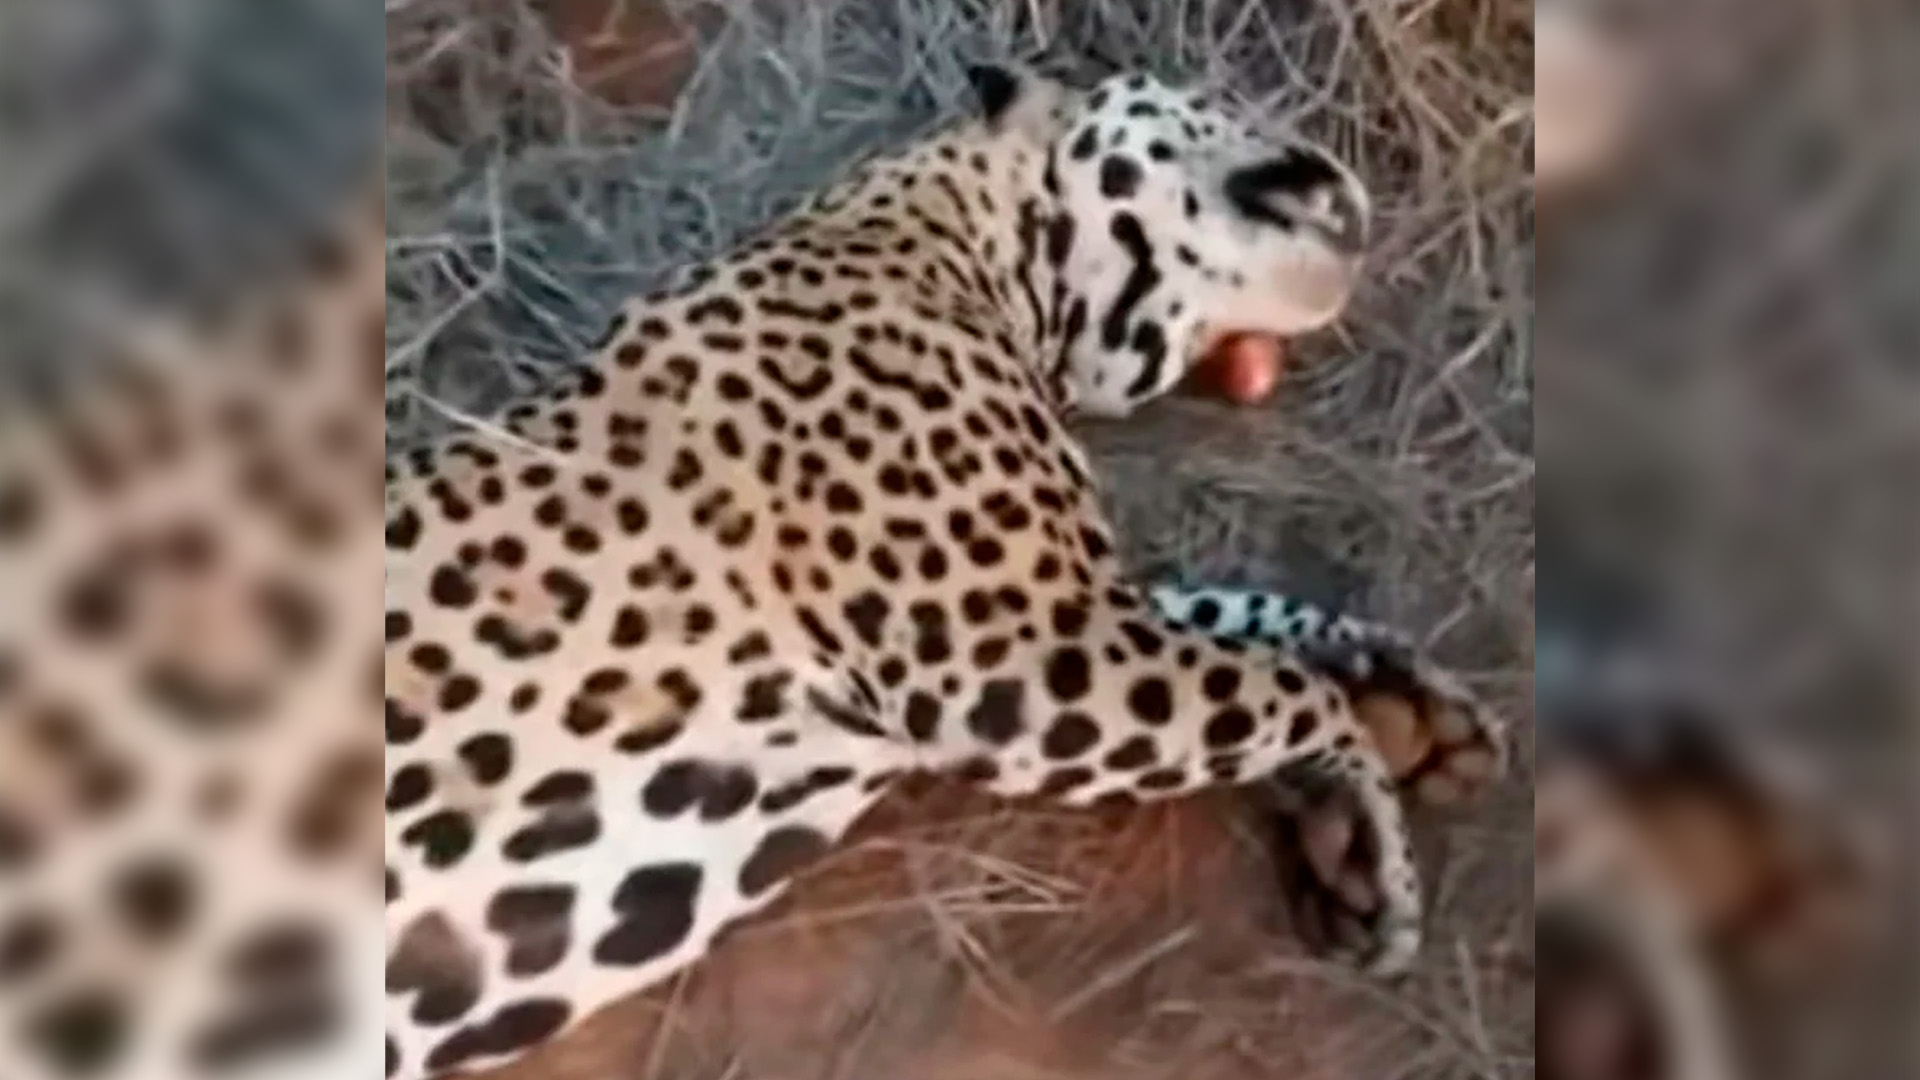 La prueba directa es un video que compartió el mismo cazador en sus redes el febrero pasado en el cual muestra al animal muerto luego de su caza